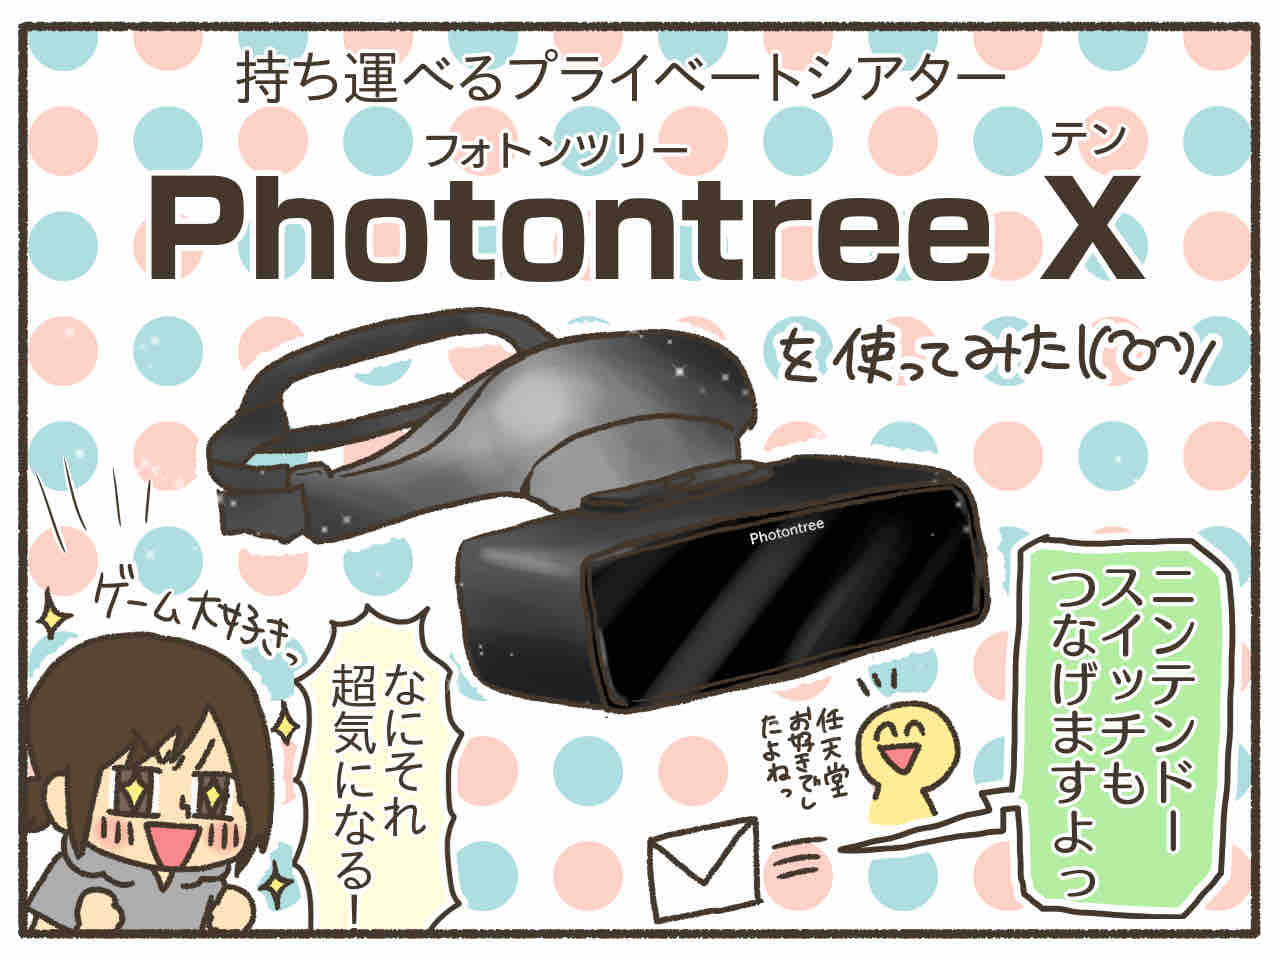 PR】プライベートシアター「Photontree X」でゲームしてみたら楽しすぎ